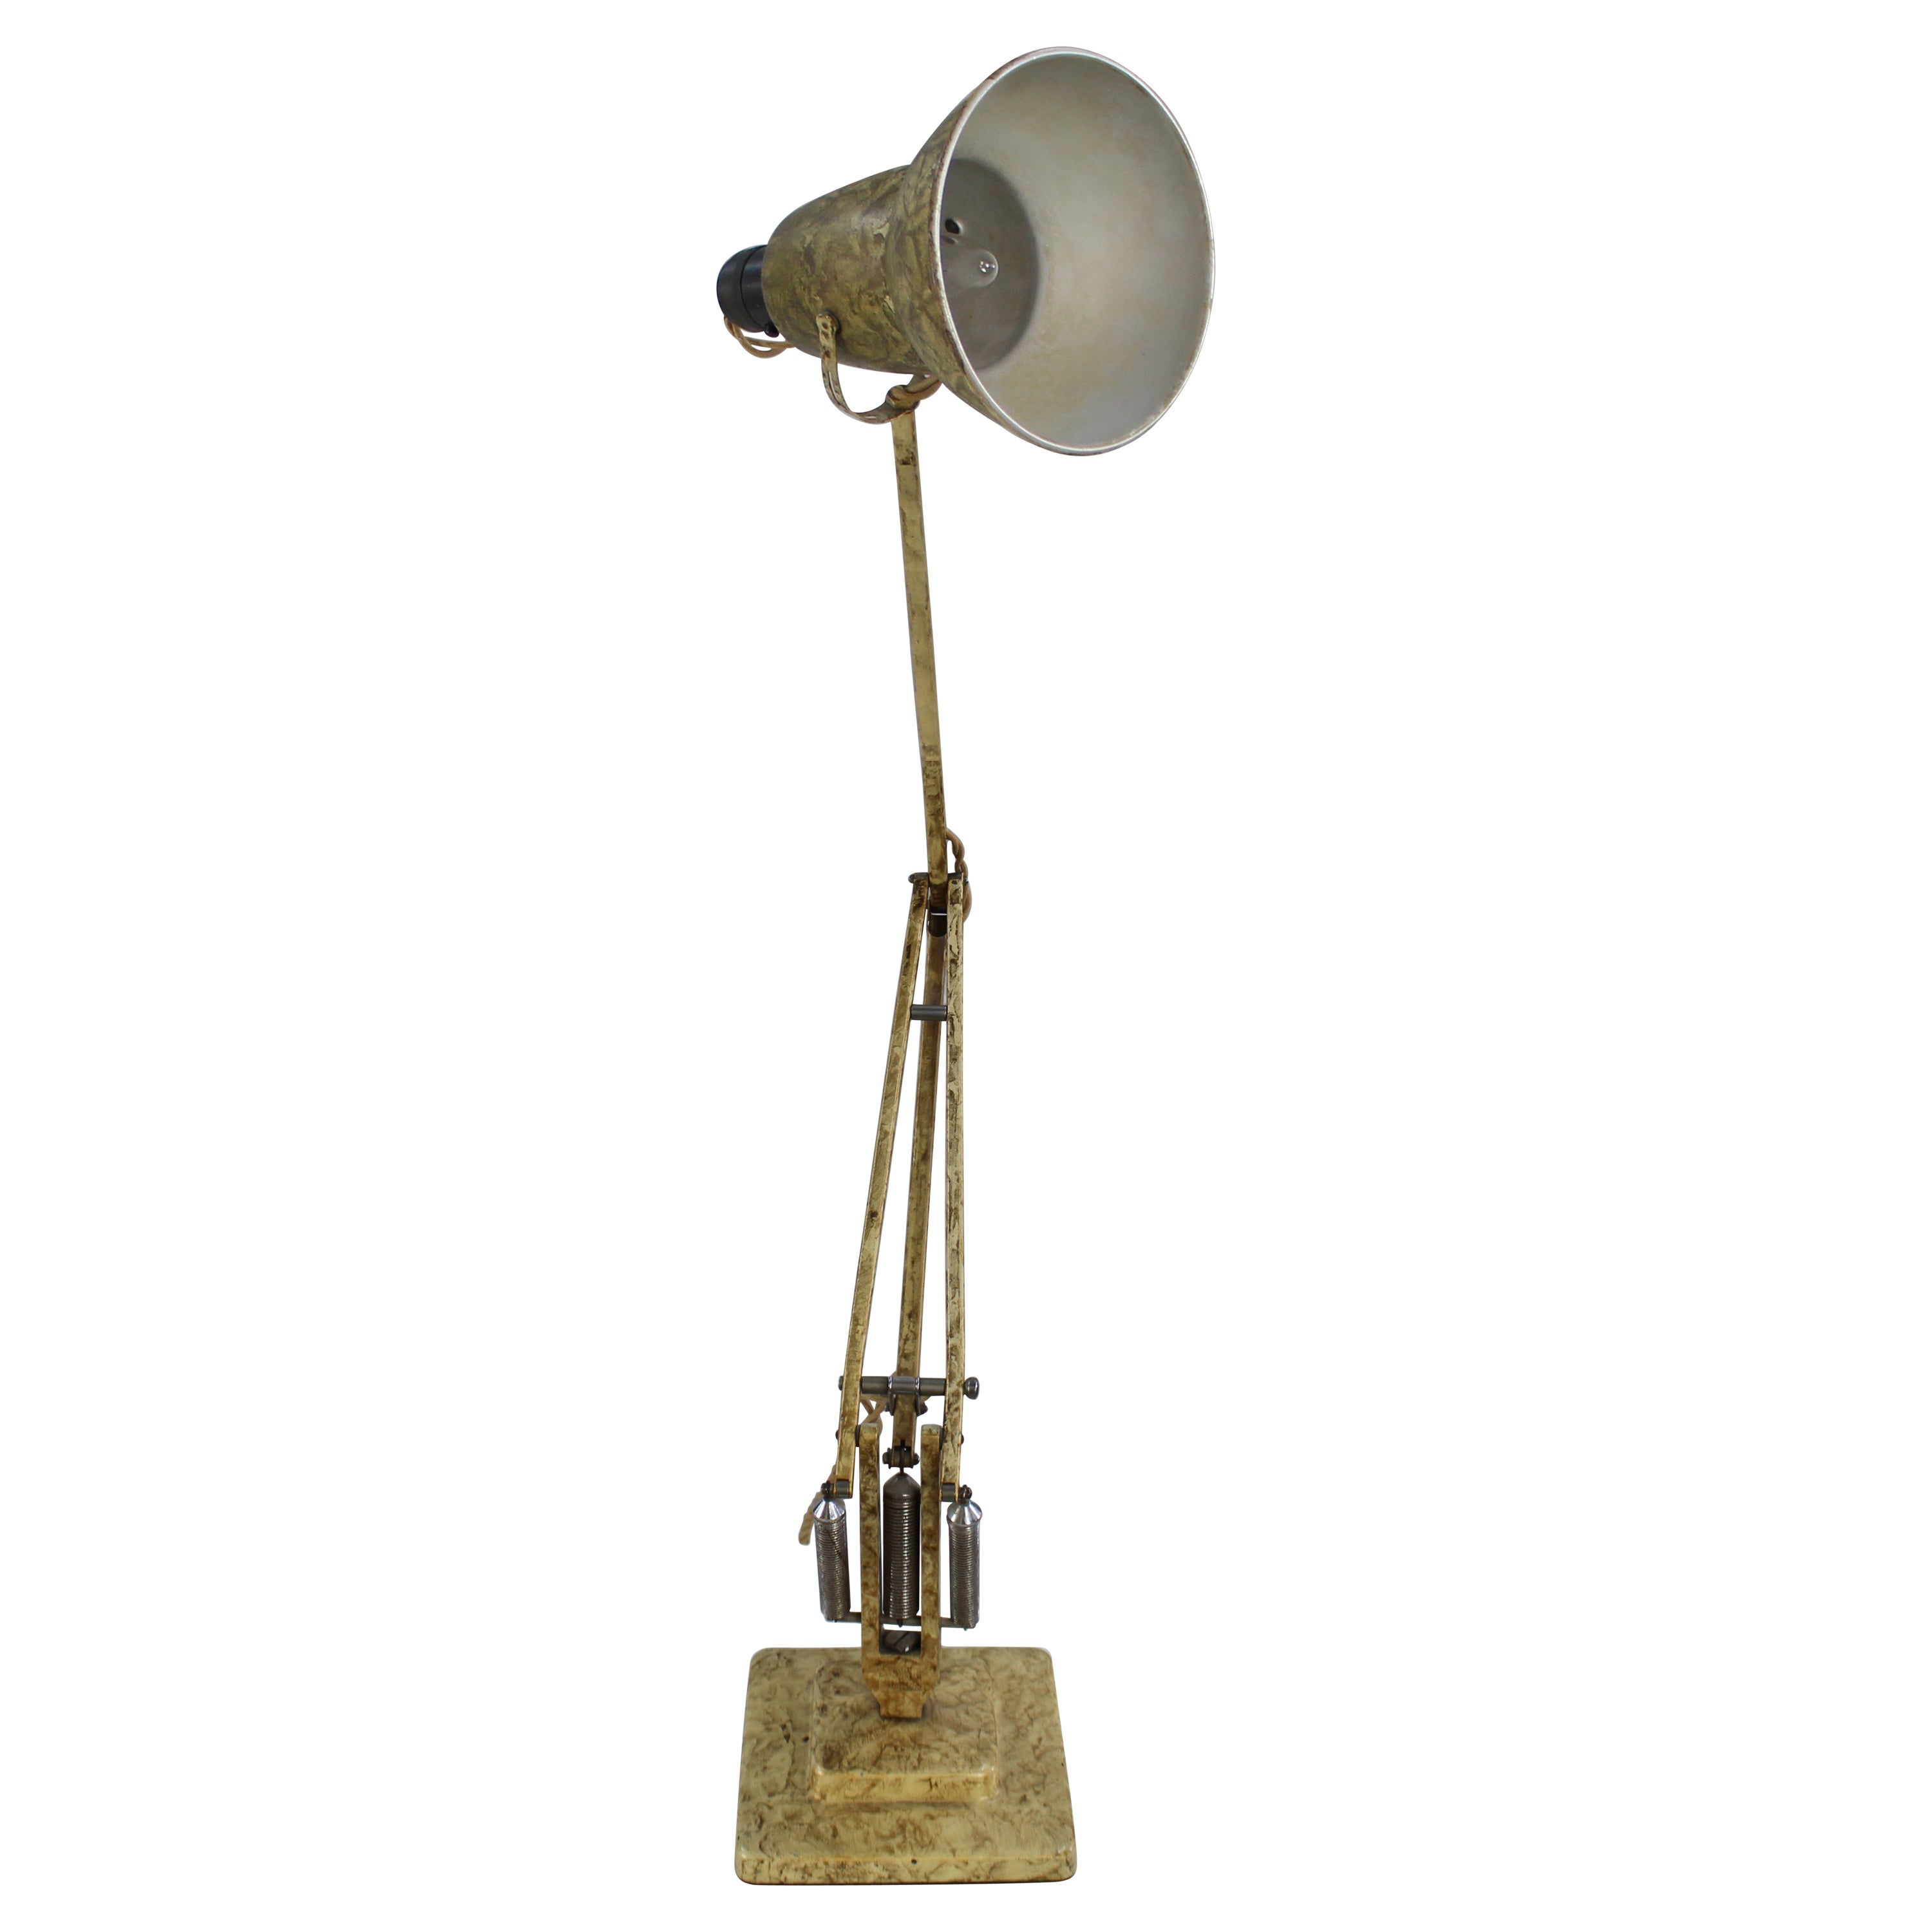 Original 1930s Herbert Terry Anglepose Desk Lamp Model 1227